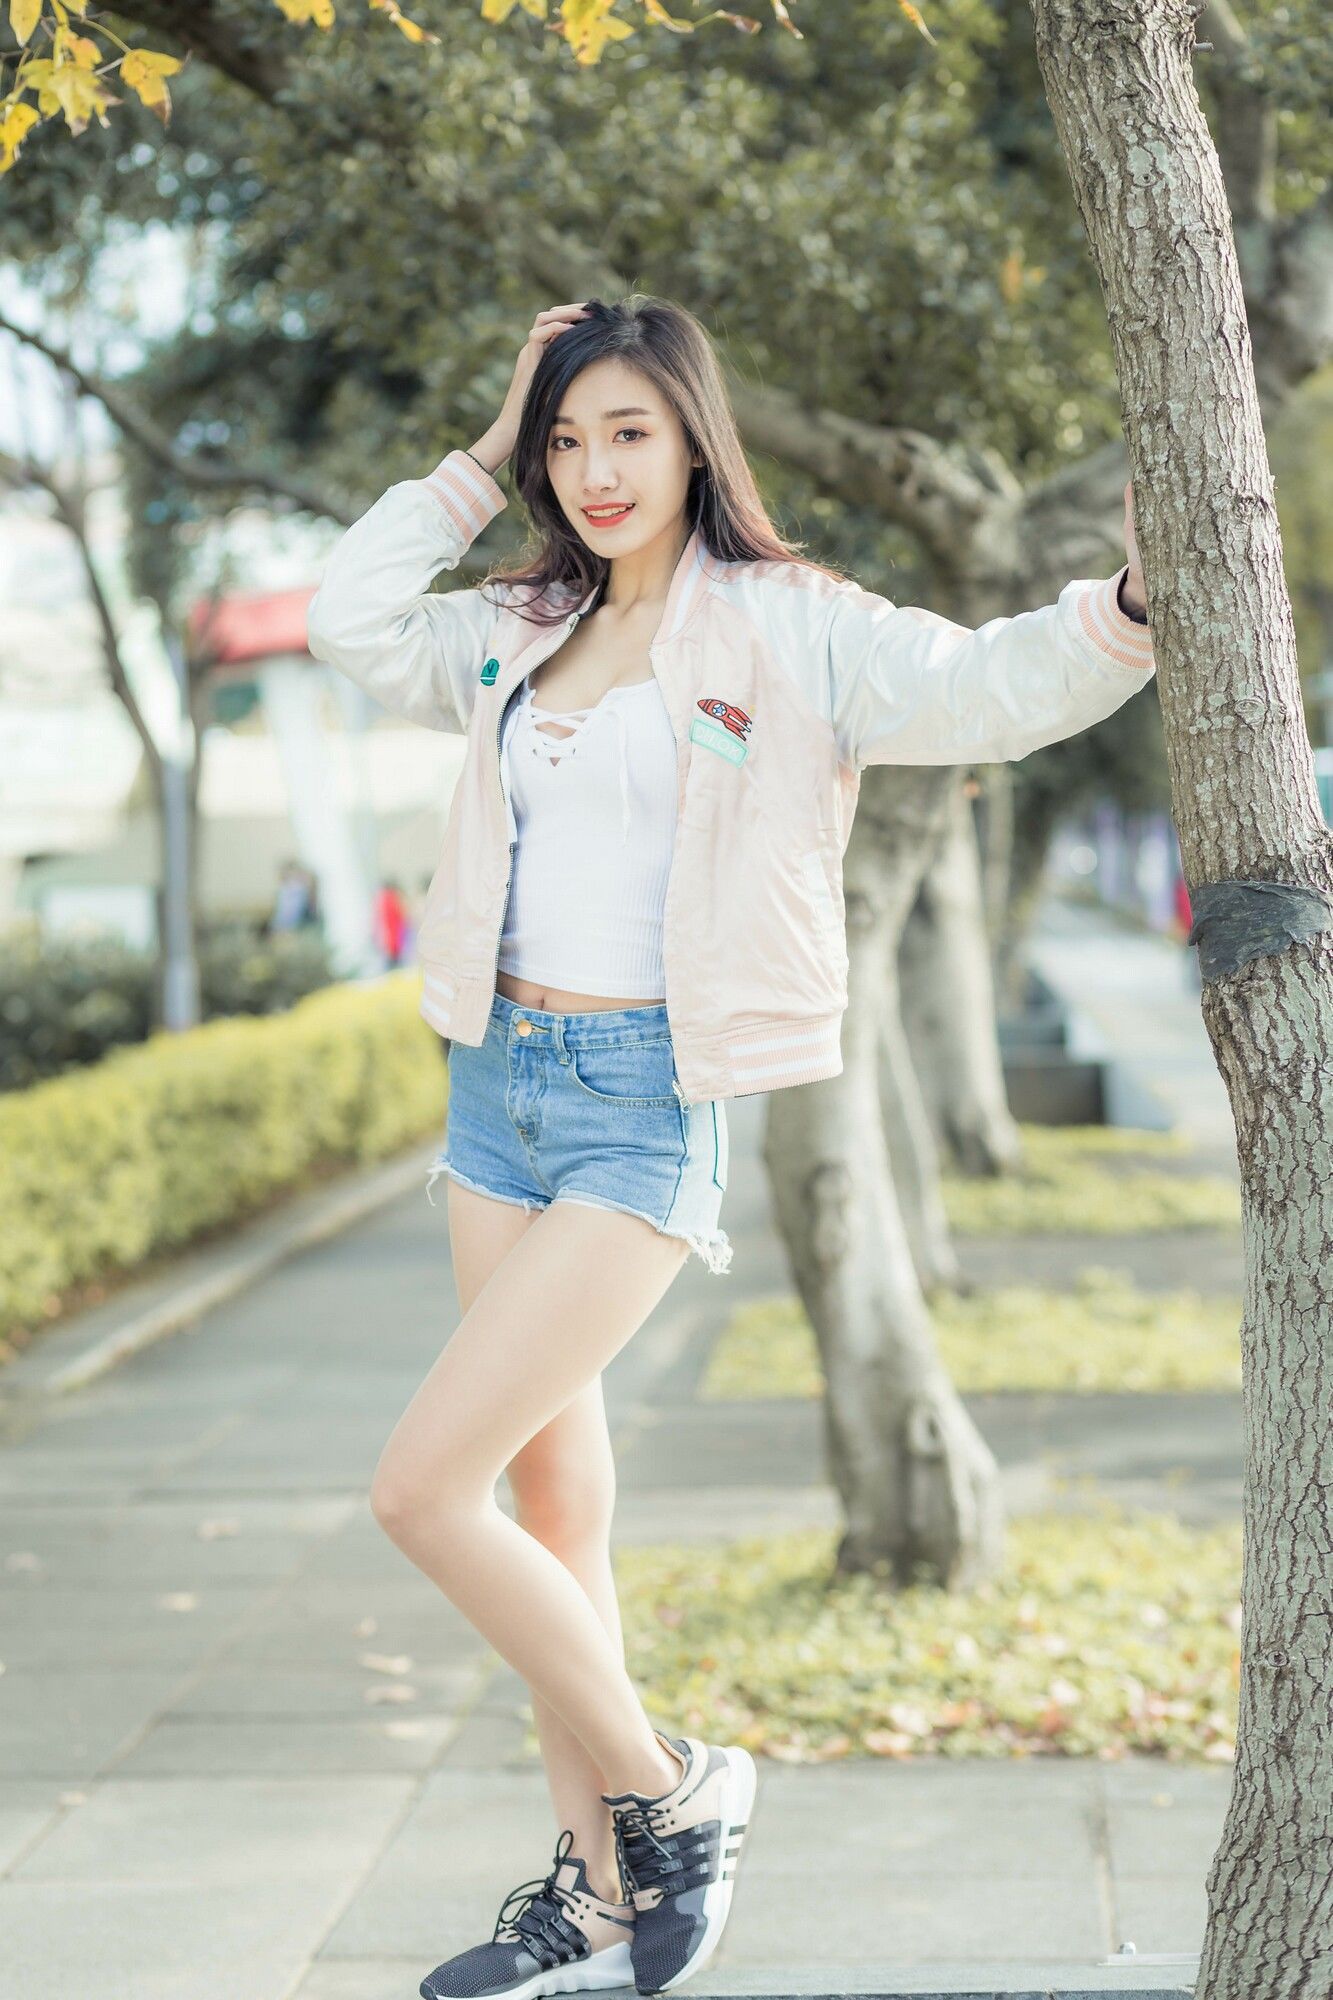 台湾美女嫩模段璟乐白皙美胸黑丝美腿松菸时装街拍写真